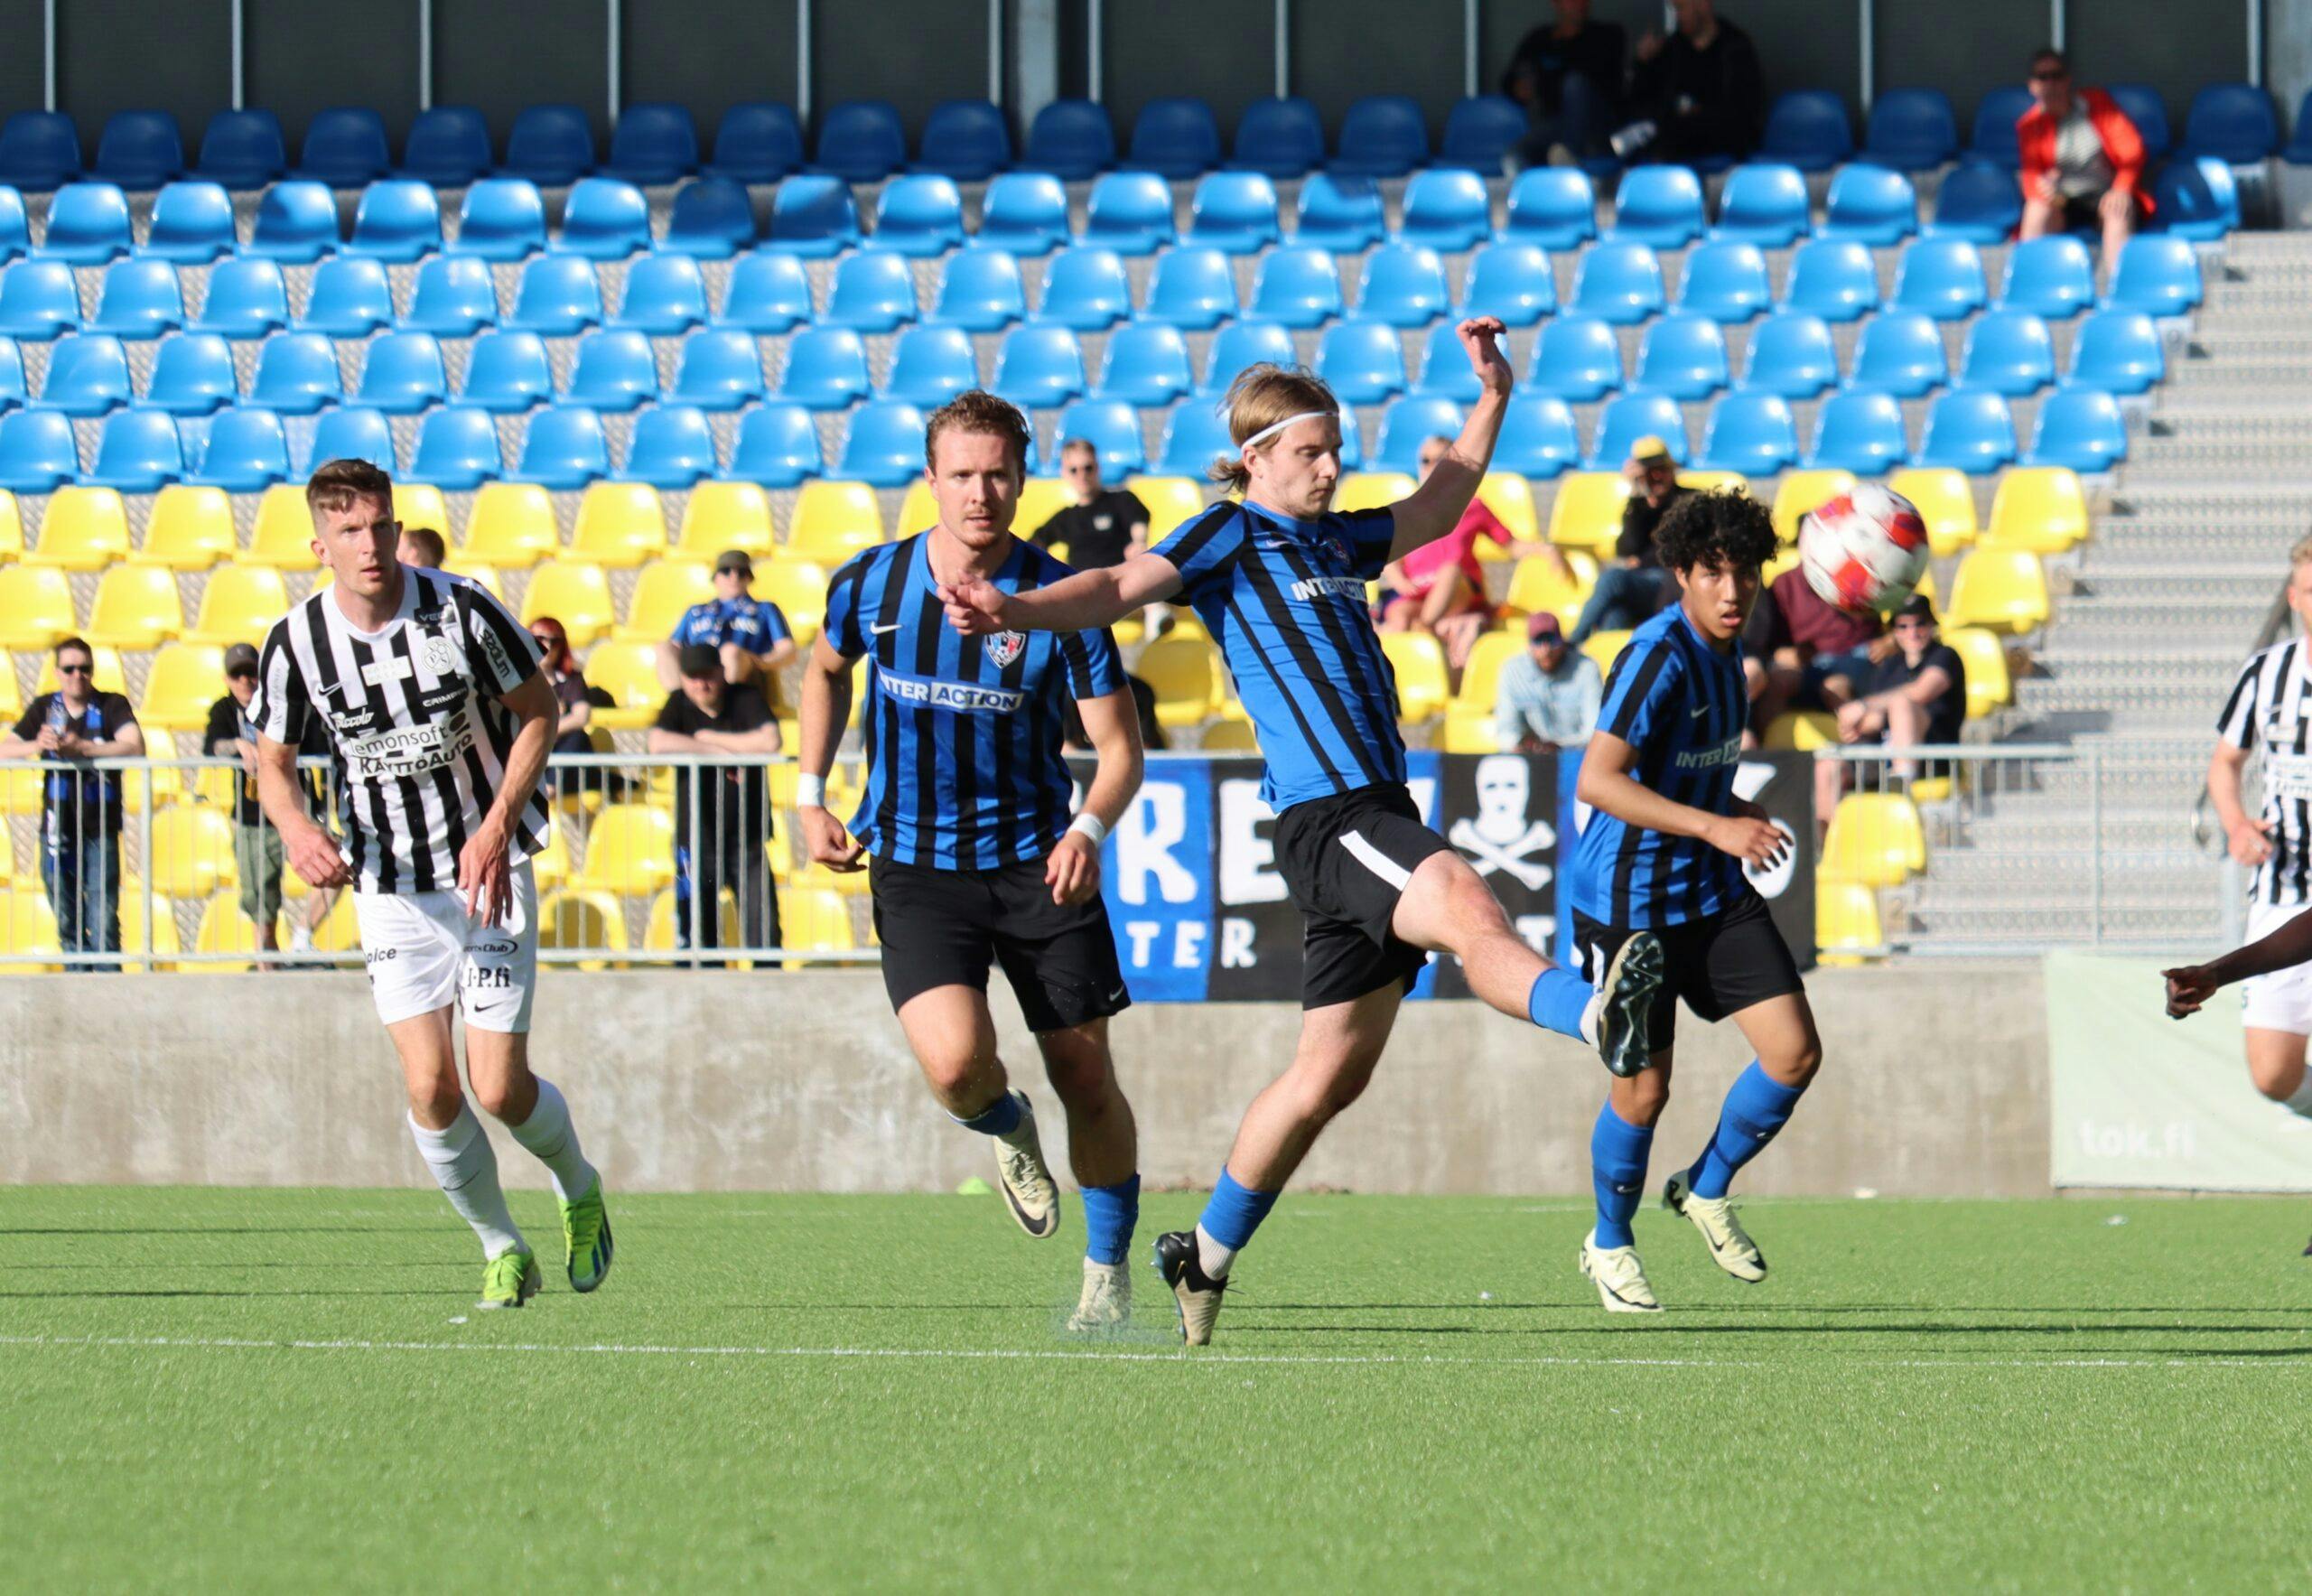 Inter 2 suuntaa taistelemaan tärkeistä pisteistä Vantaalle